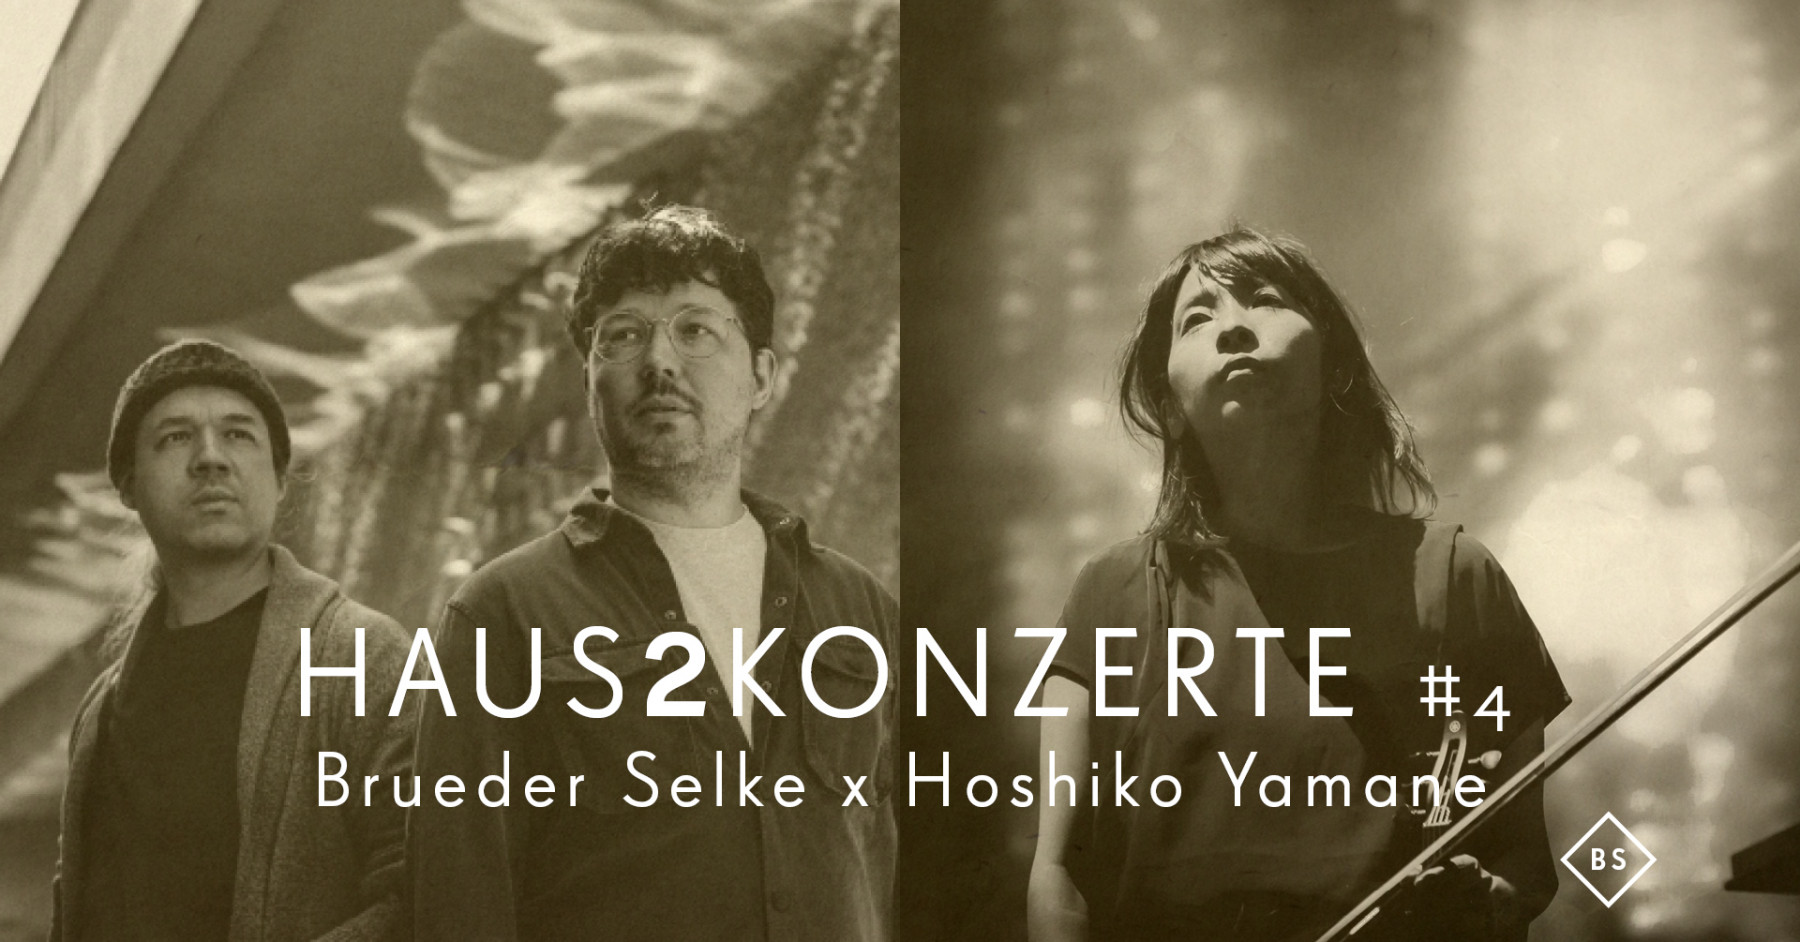 Haus2konzerte #4 - Brueder Selke x Hoshiko Yamane